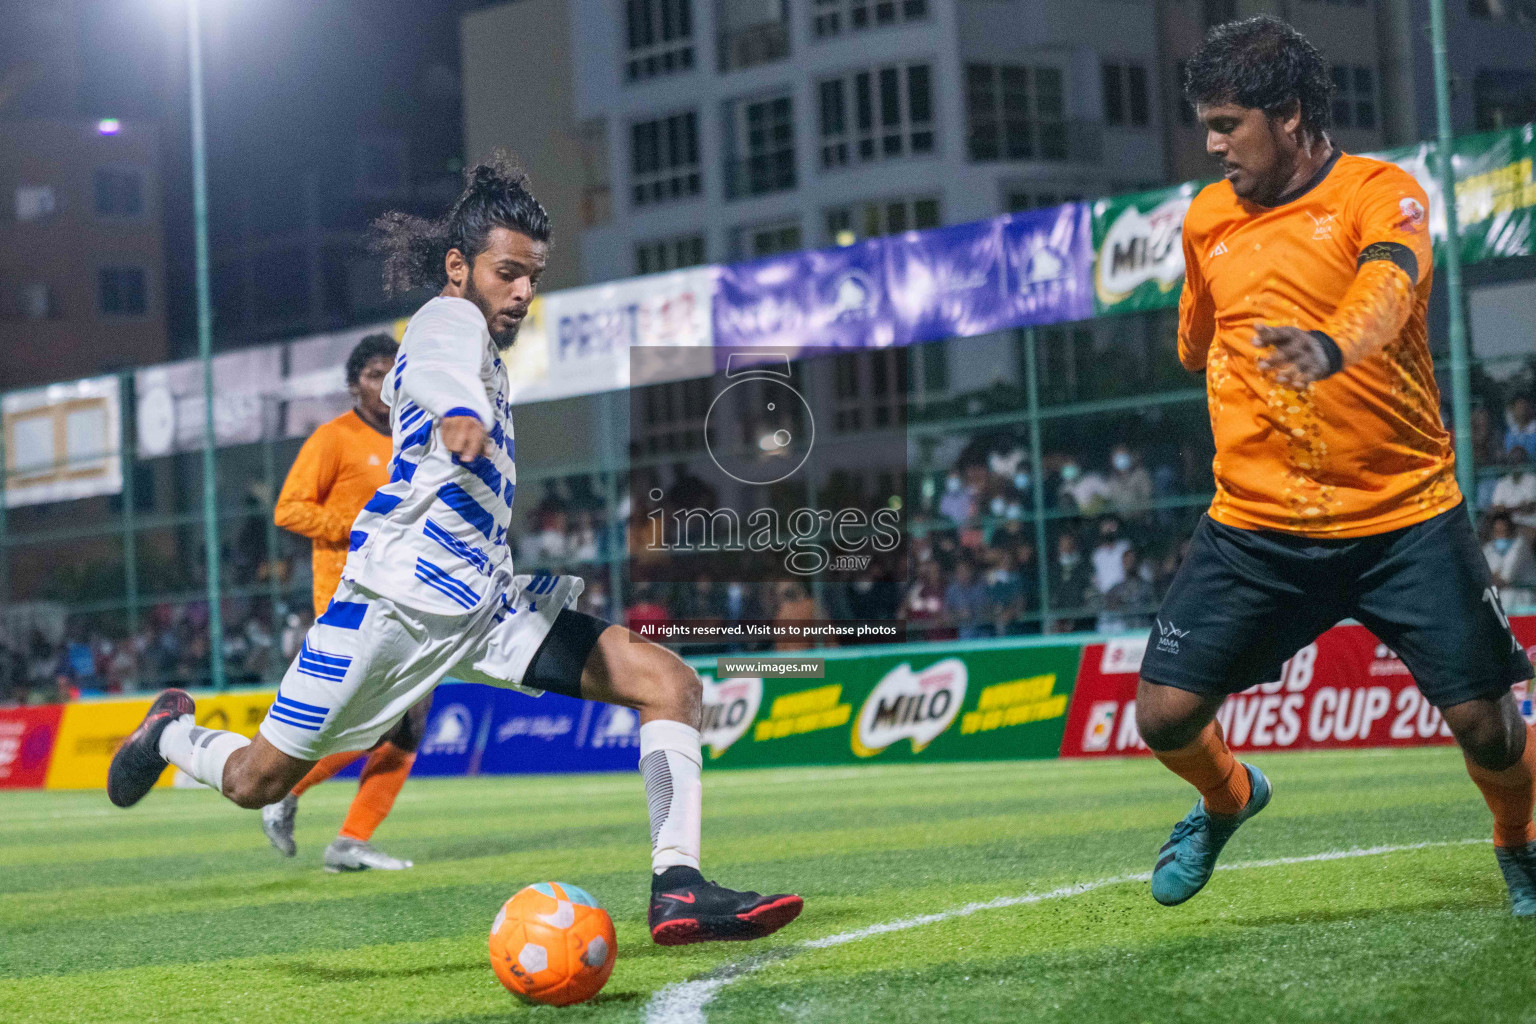 Club Maldives Day 9 - 30th November 2021, at Hulhumale. Photos by Simah & Maanish / Images.mv